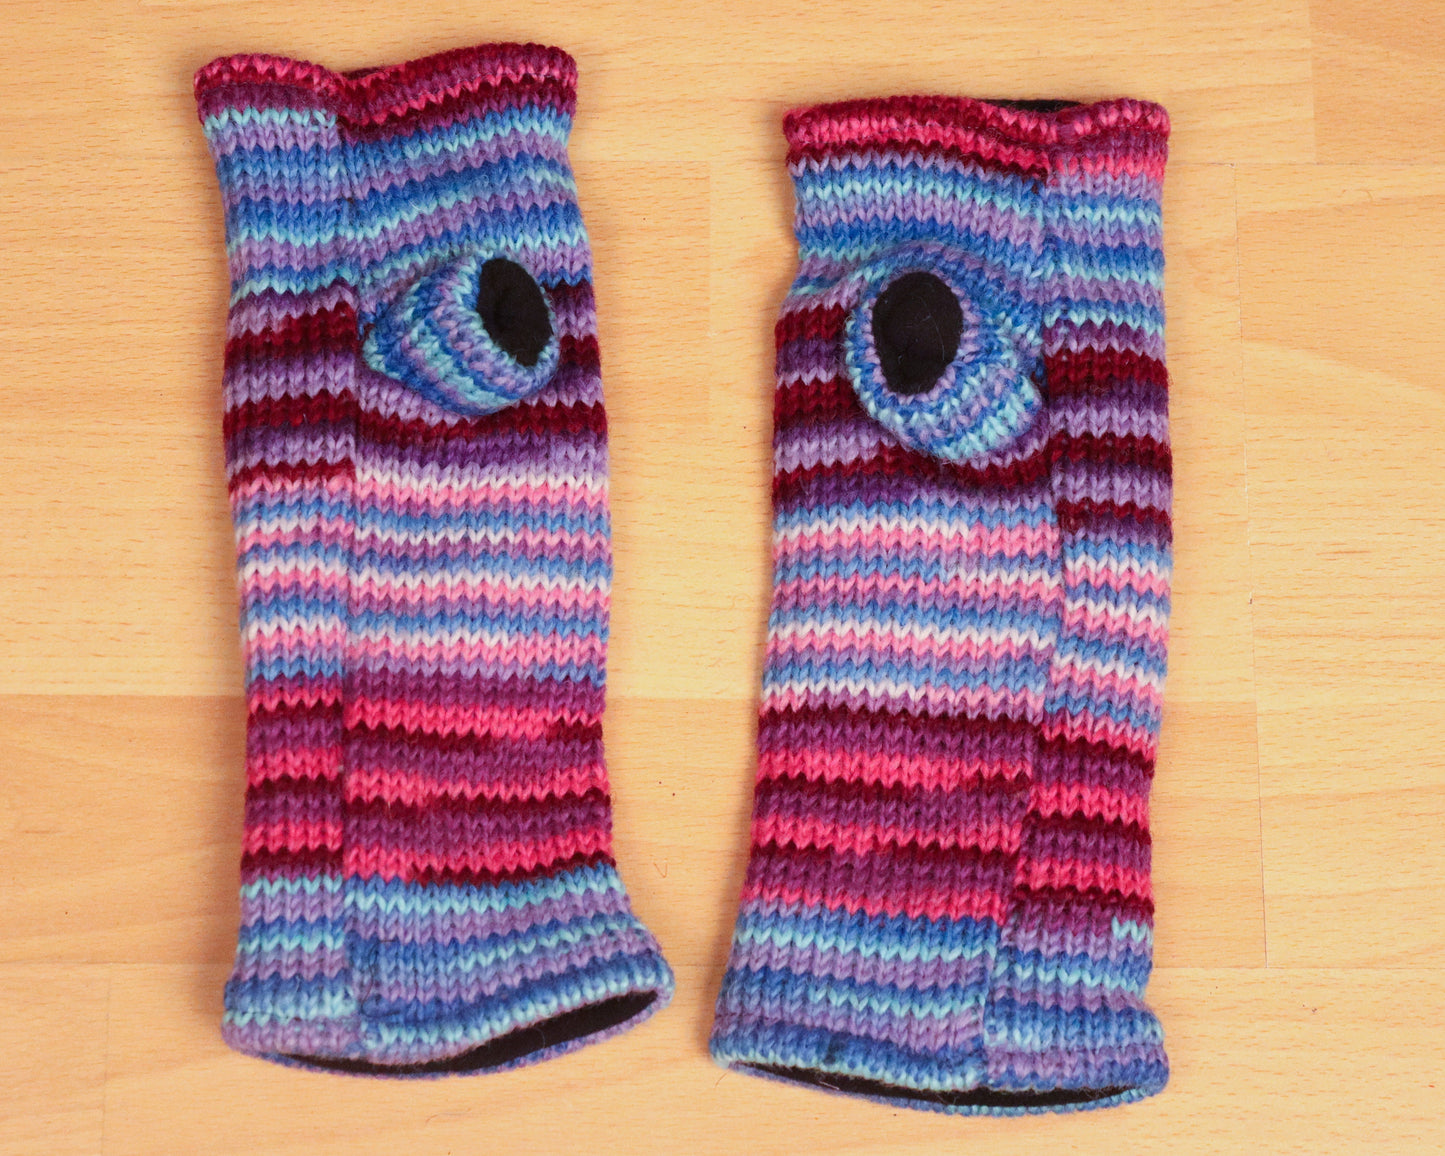 Chauffe-poignets tricotés doublés de polaire - Rayé bleu violet et rose